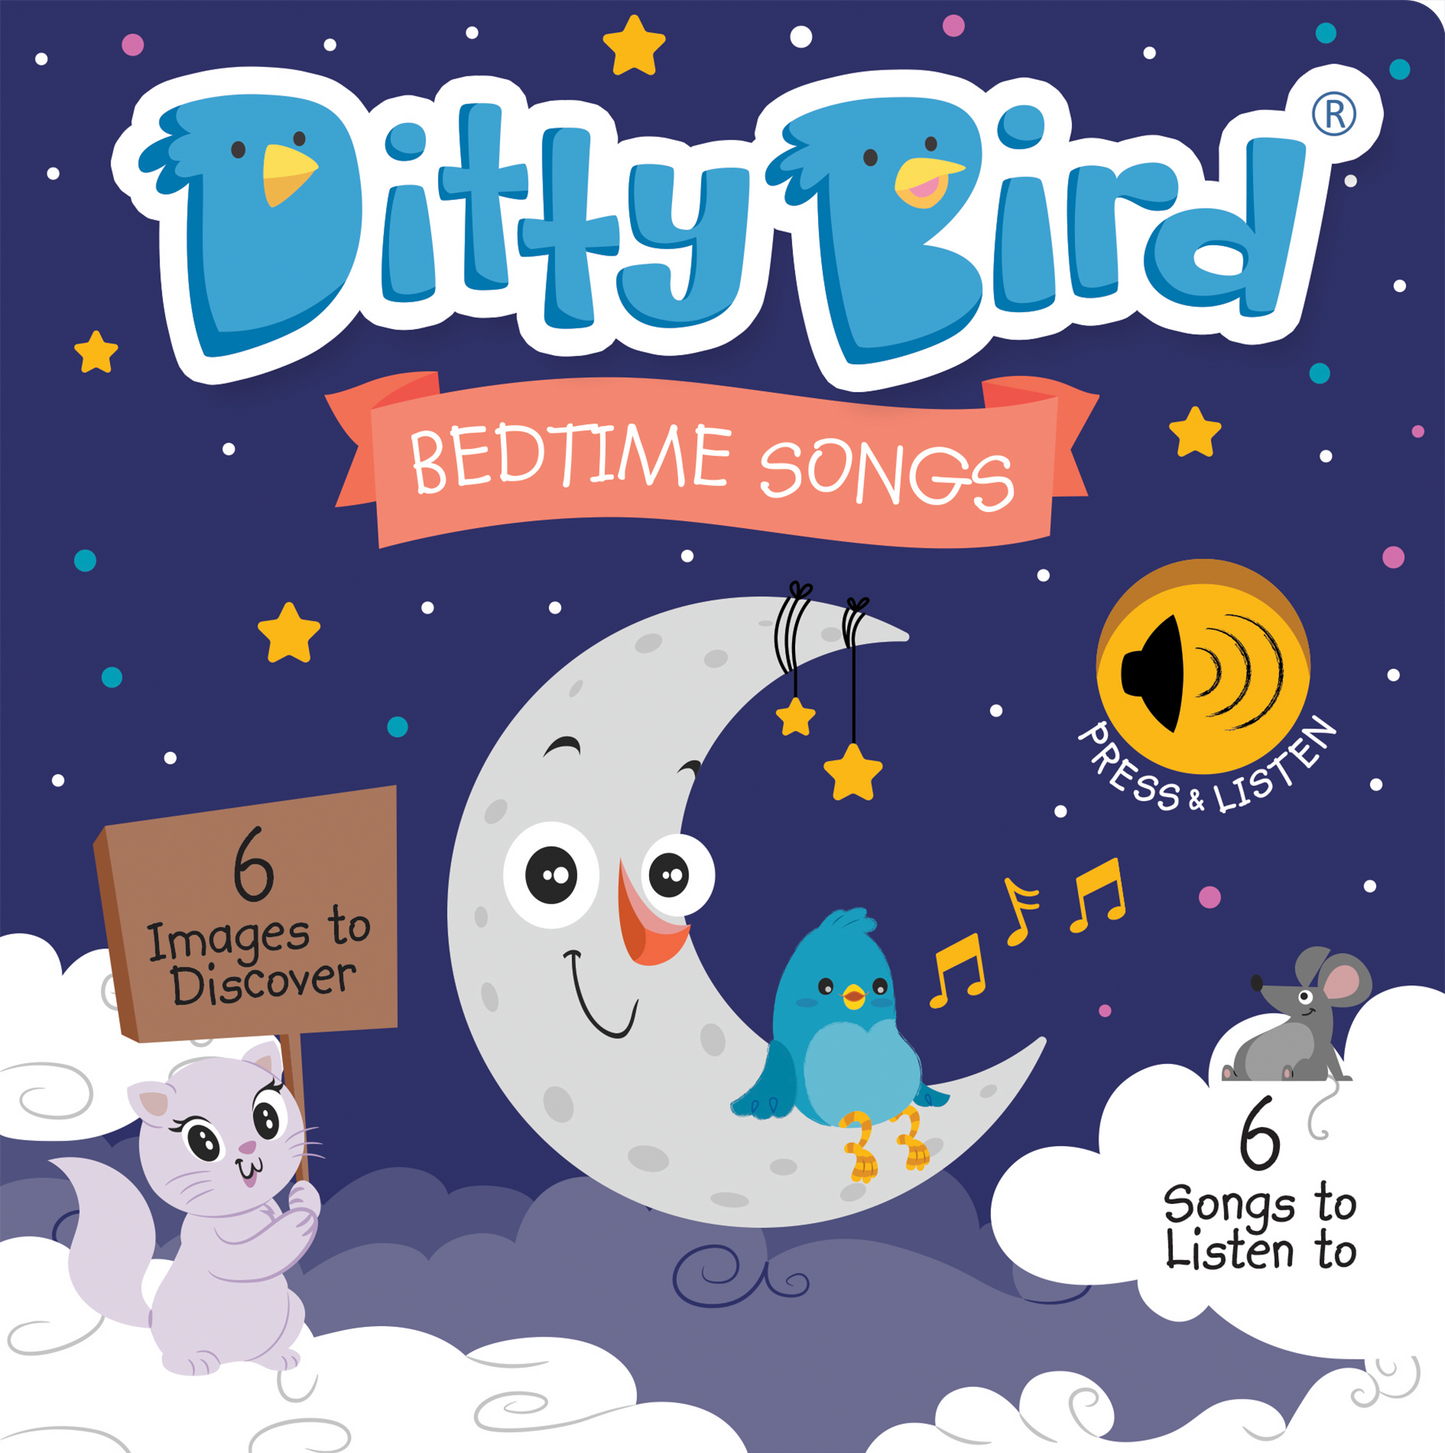 DITTY BIRD Sound Book: Bedtime Songs